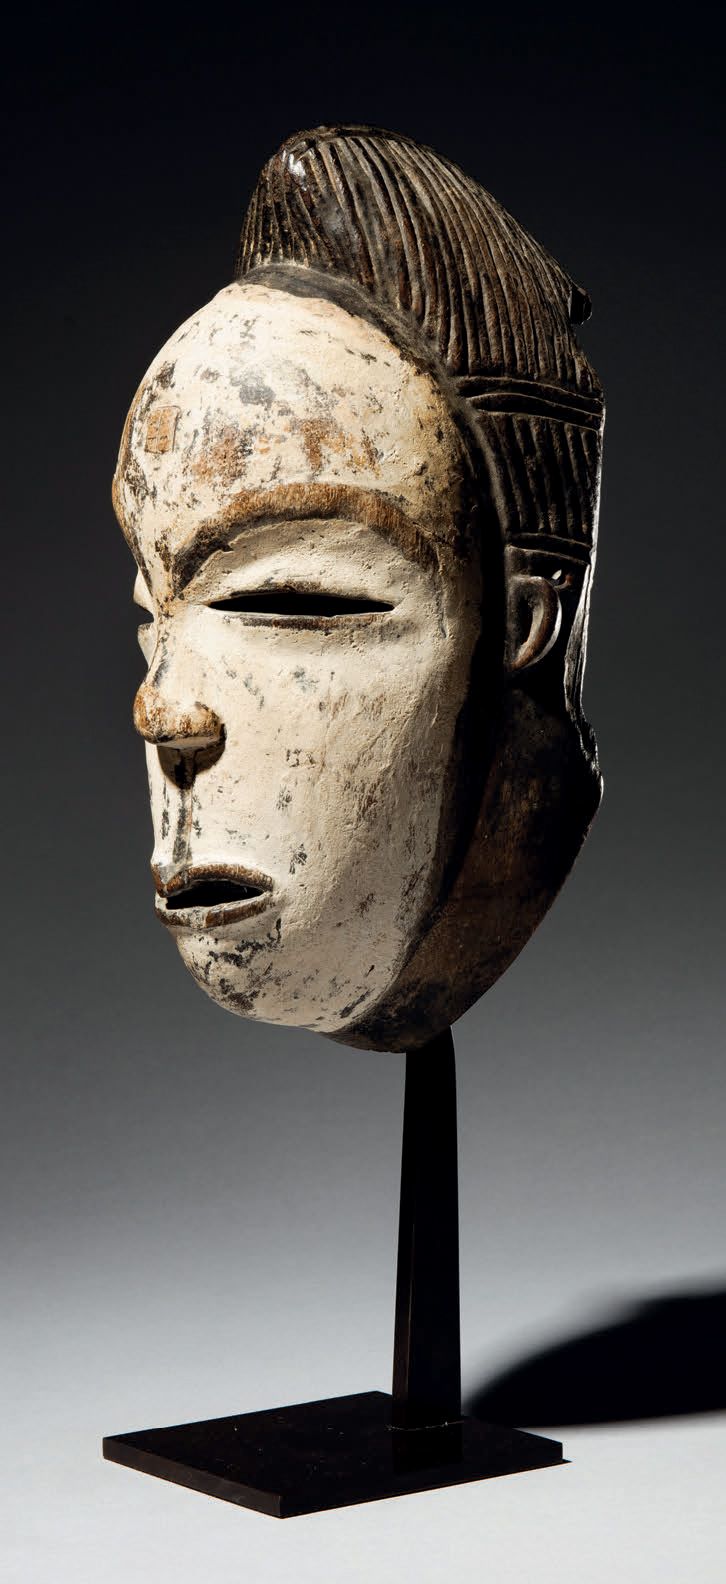 Null - MASCHERA DI NZEBI, GABON
Legno
H. 28 cm
Maschera molto antica che mostra &hellip;